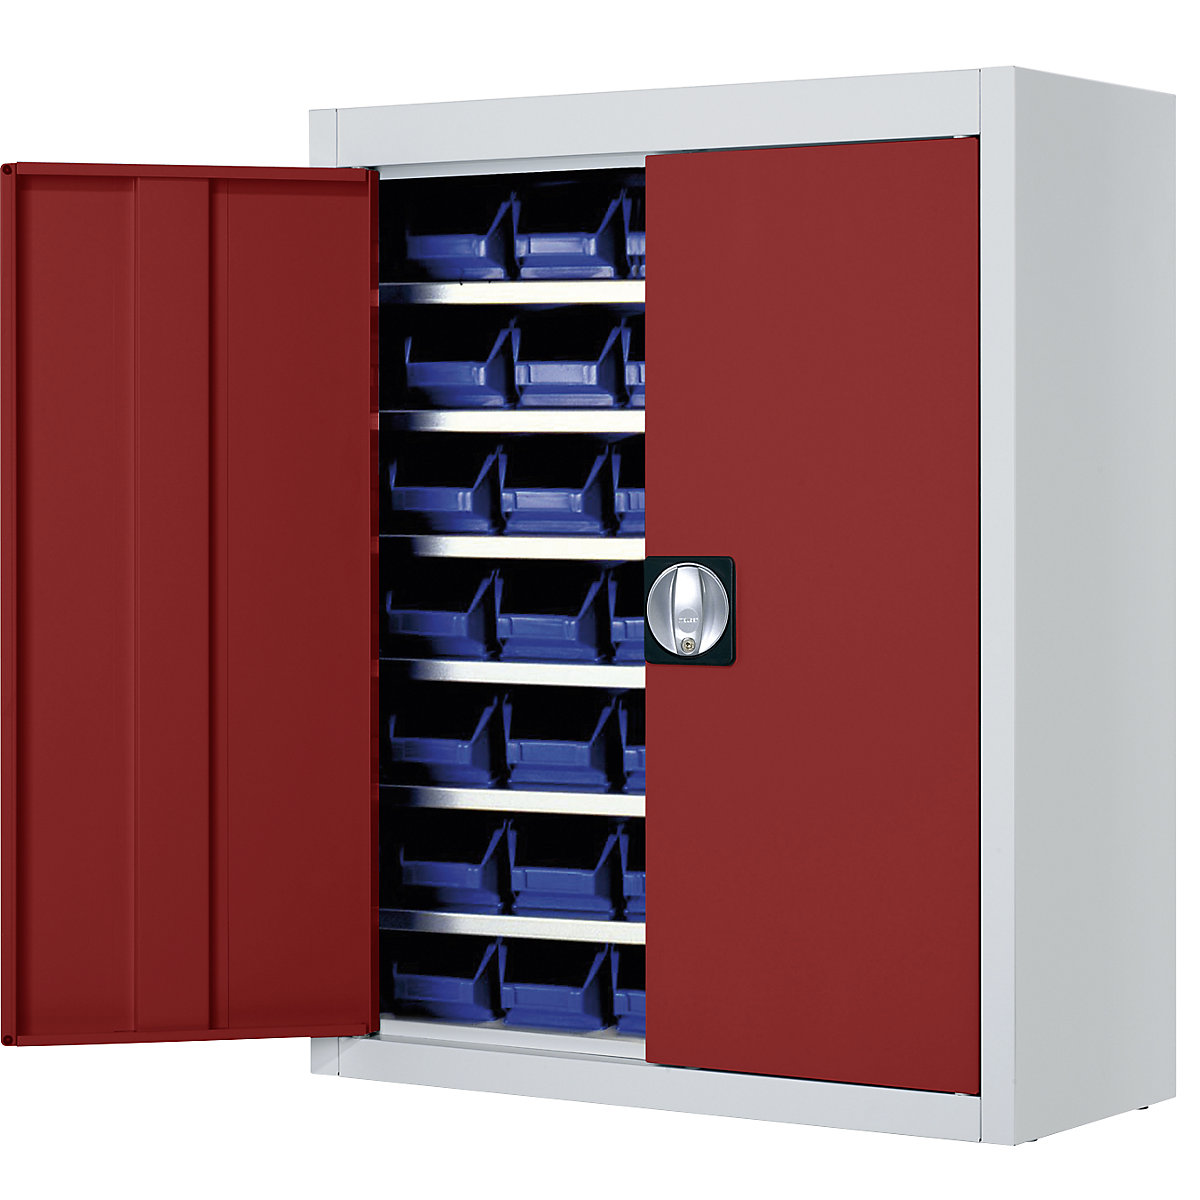 Magazijnkast met magazijnbakken – mauser, h x b x d = 820 x 680 x 280 mm, tweekleurig, kastframe grijs, deuren rood, 42 bakken-4